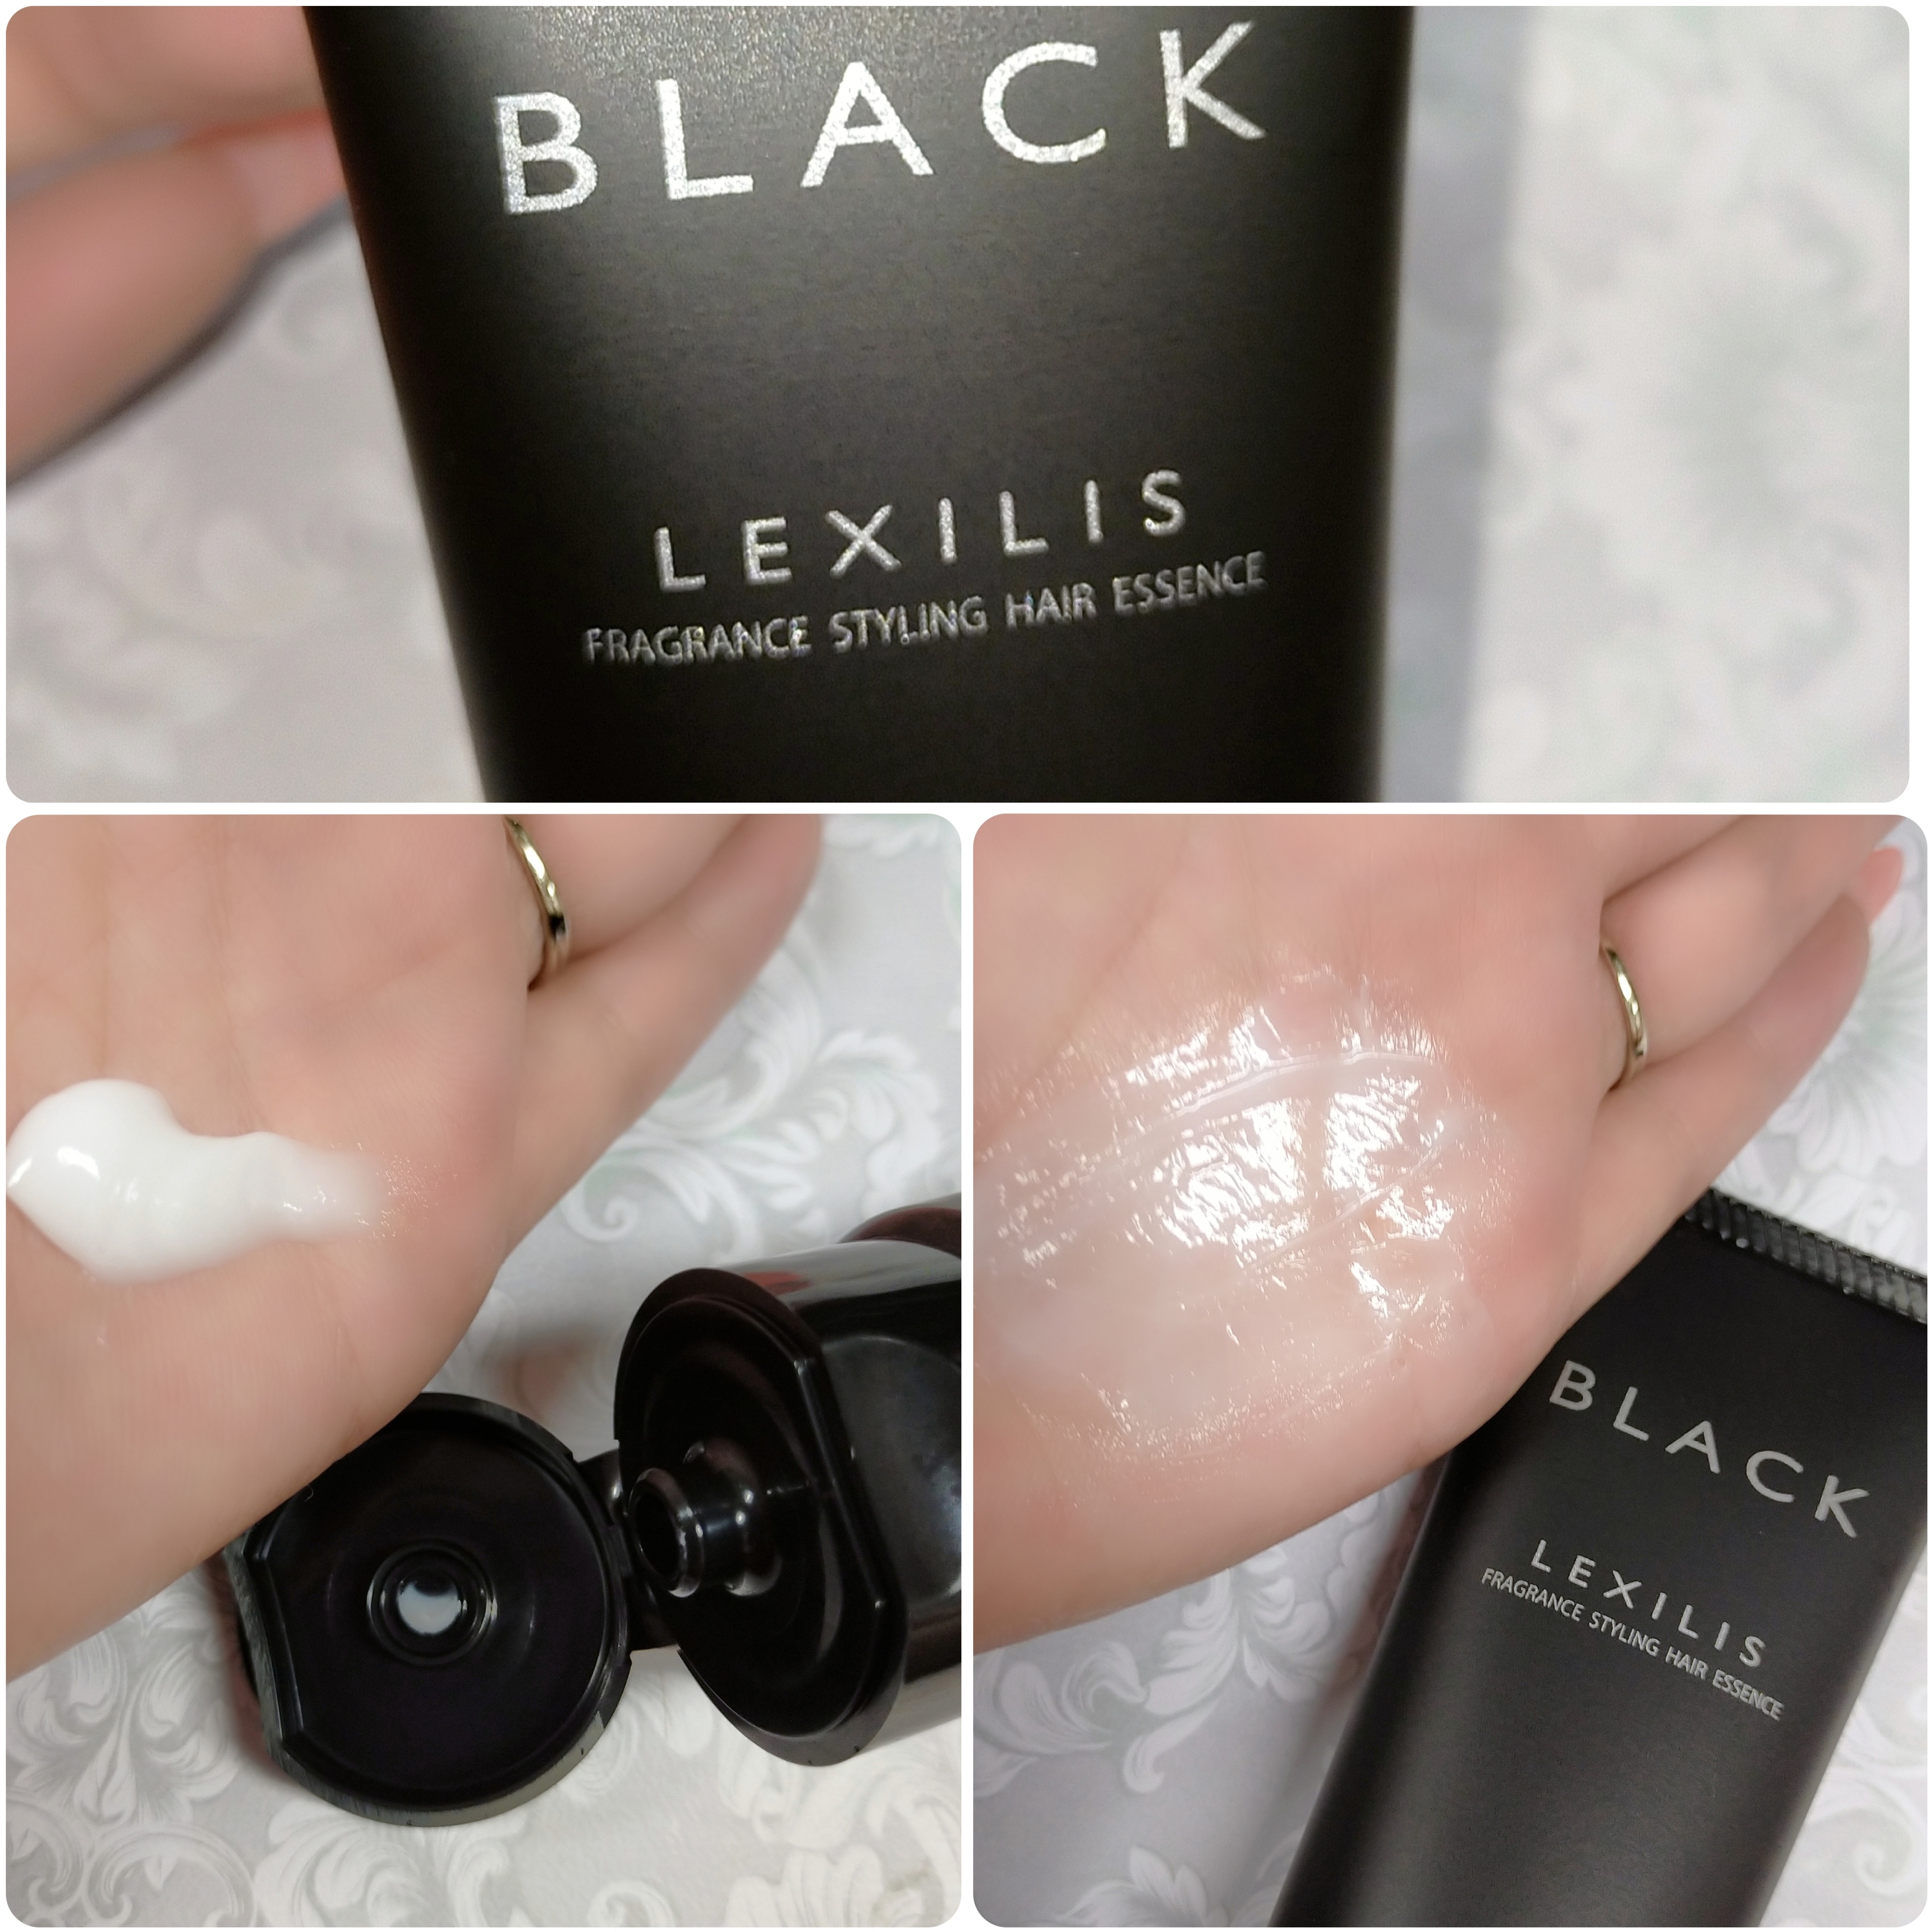 LEXILIS BLACK(レキシリスブラック) フレグランス スタイリング ヘアエッセンスの良い点・メリットに関するみこさんの口コミ画像2